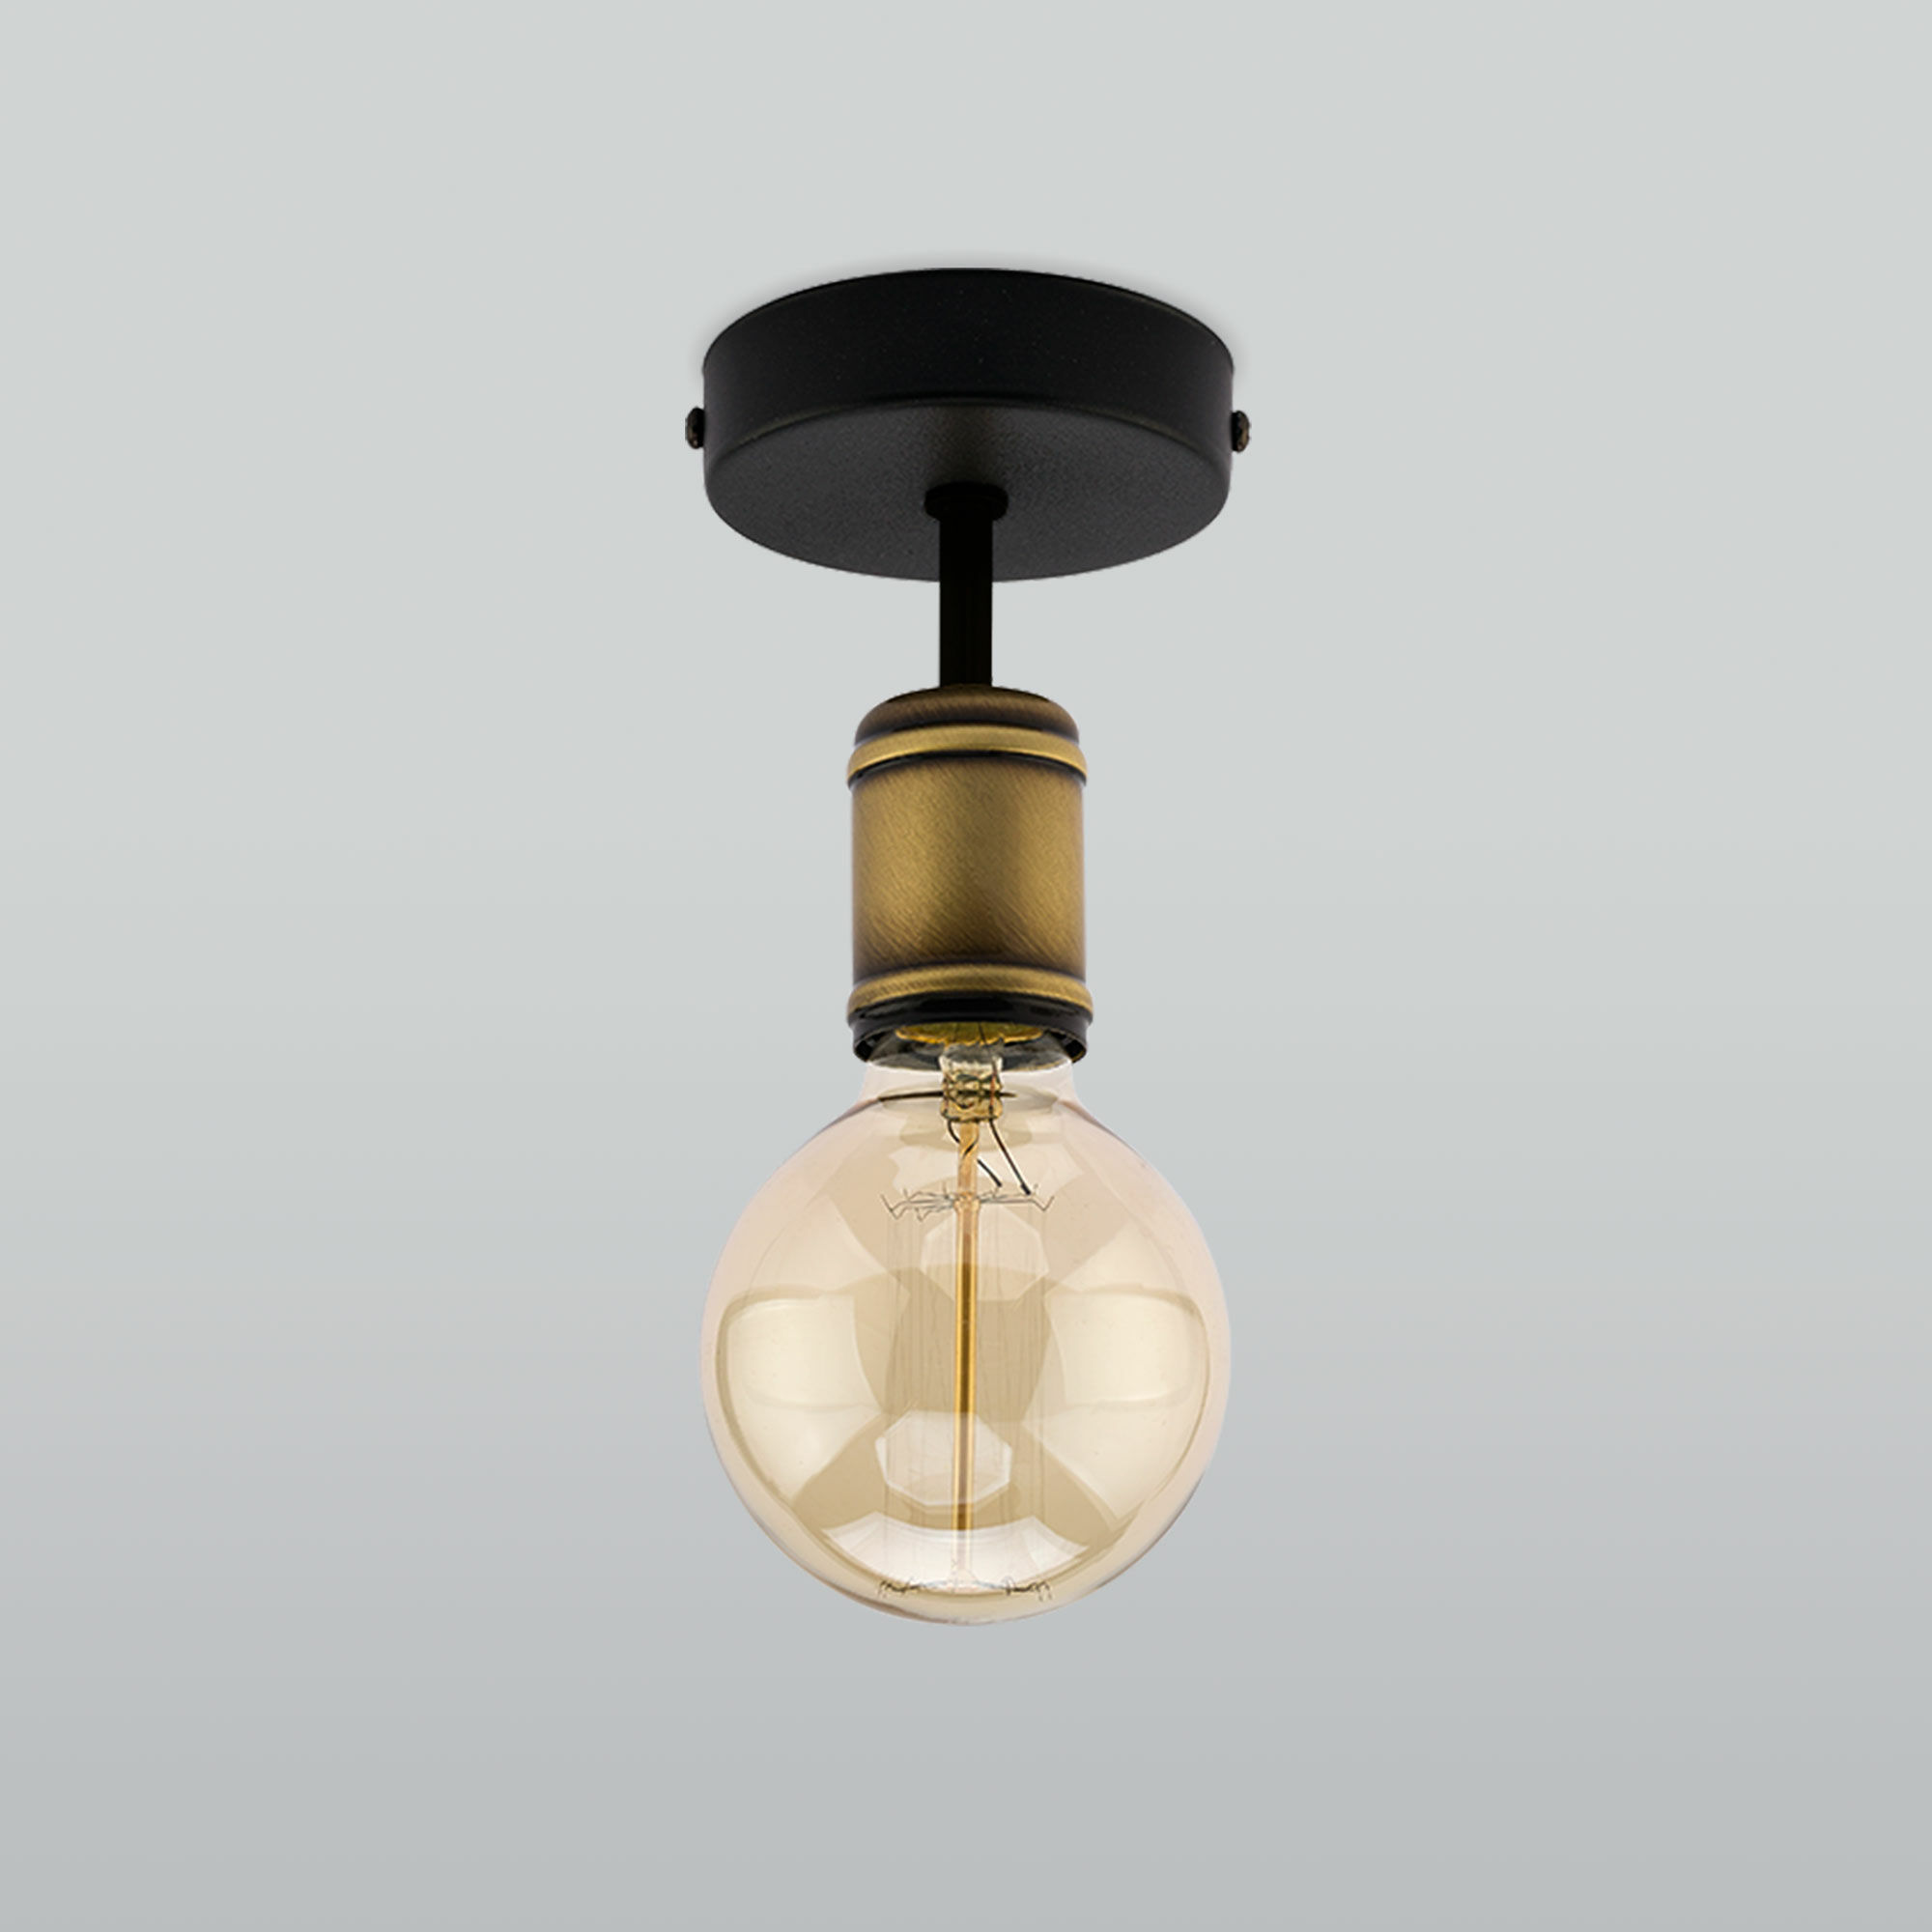 Потолочный светильник в стиле лофт TK Lighting Retro 1901 Retro. Фото 1